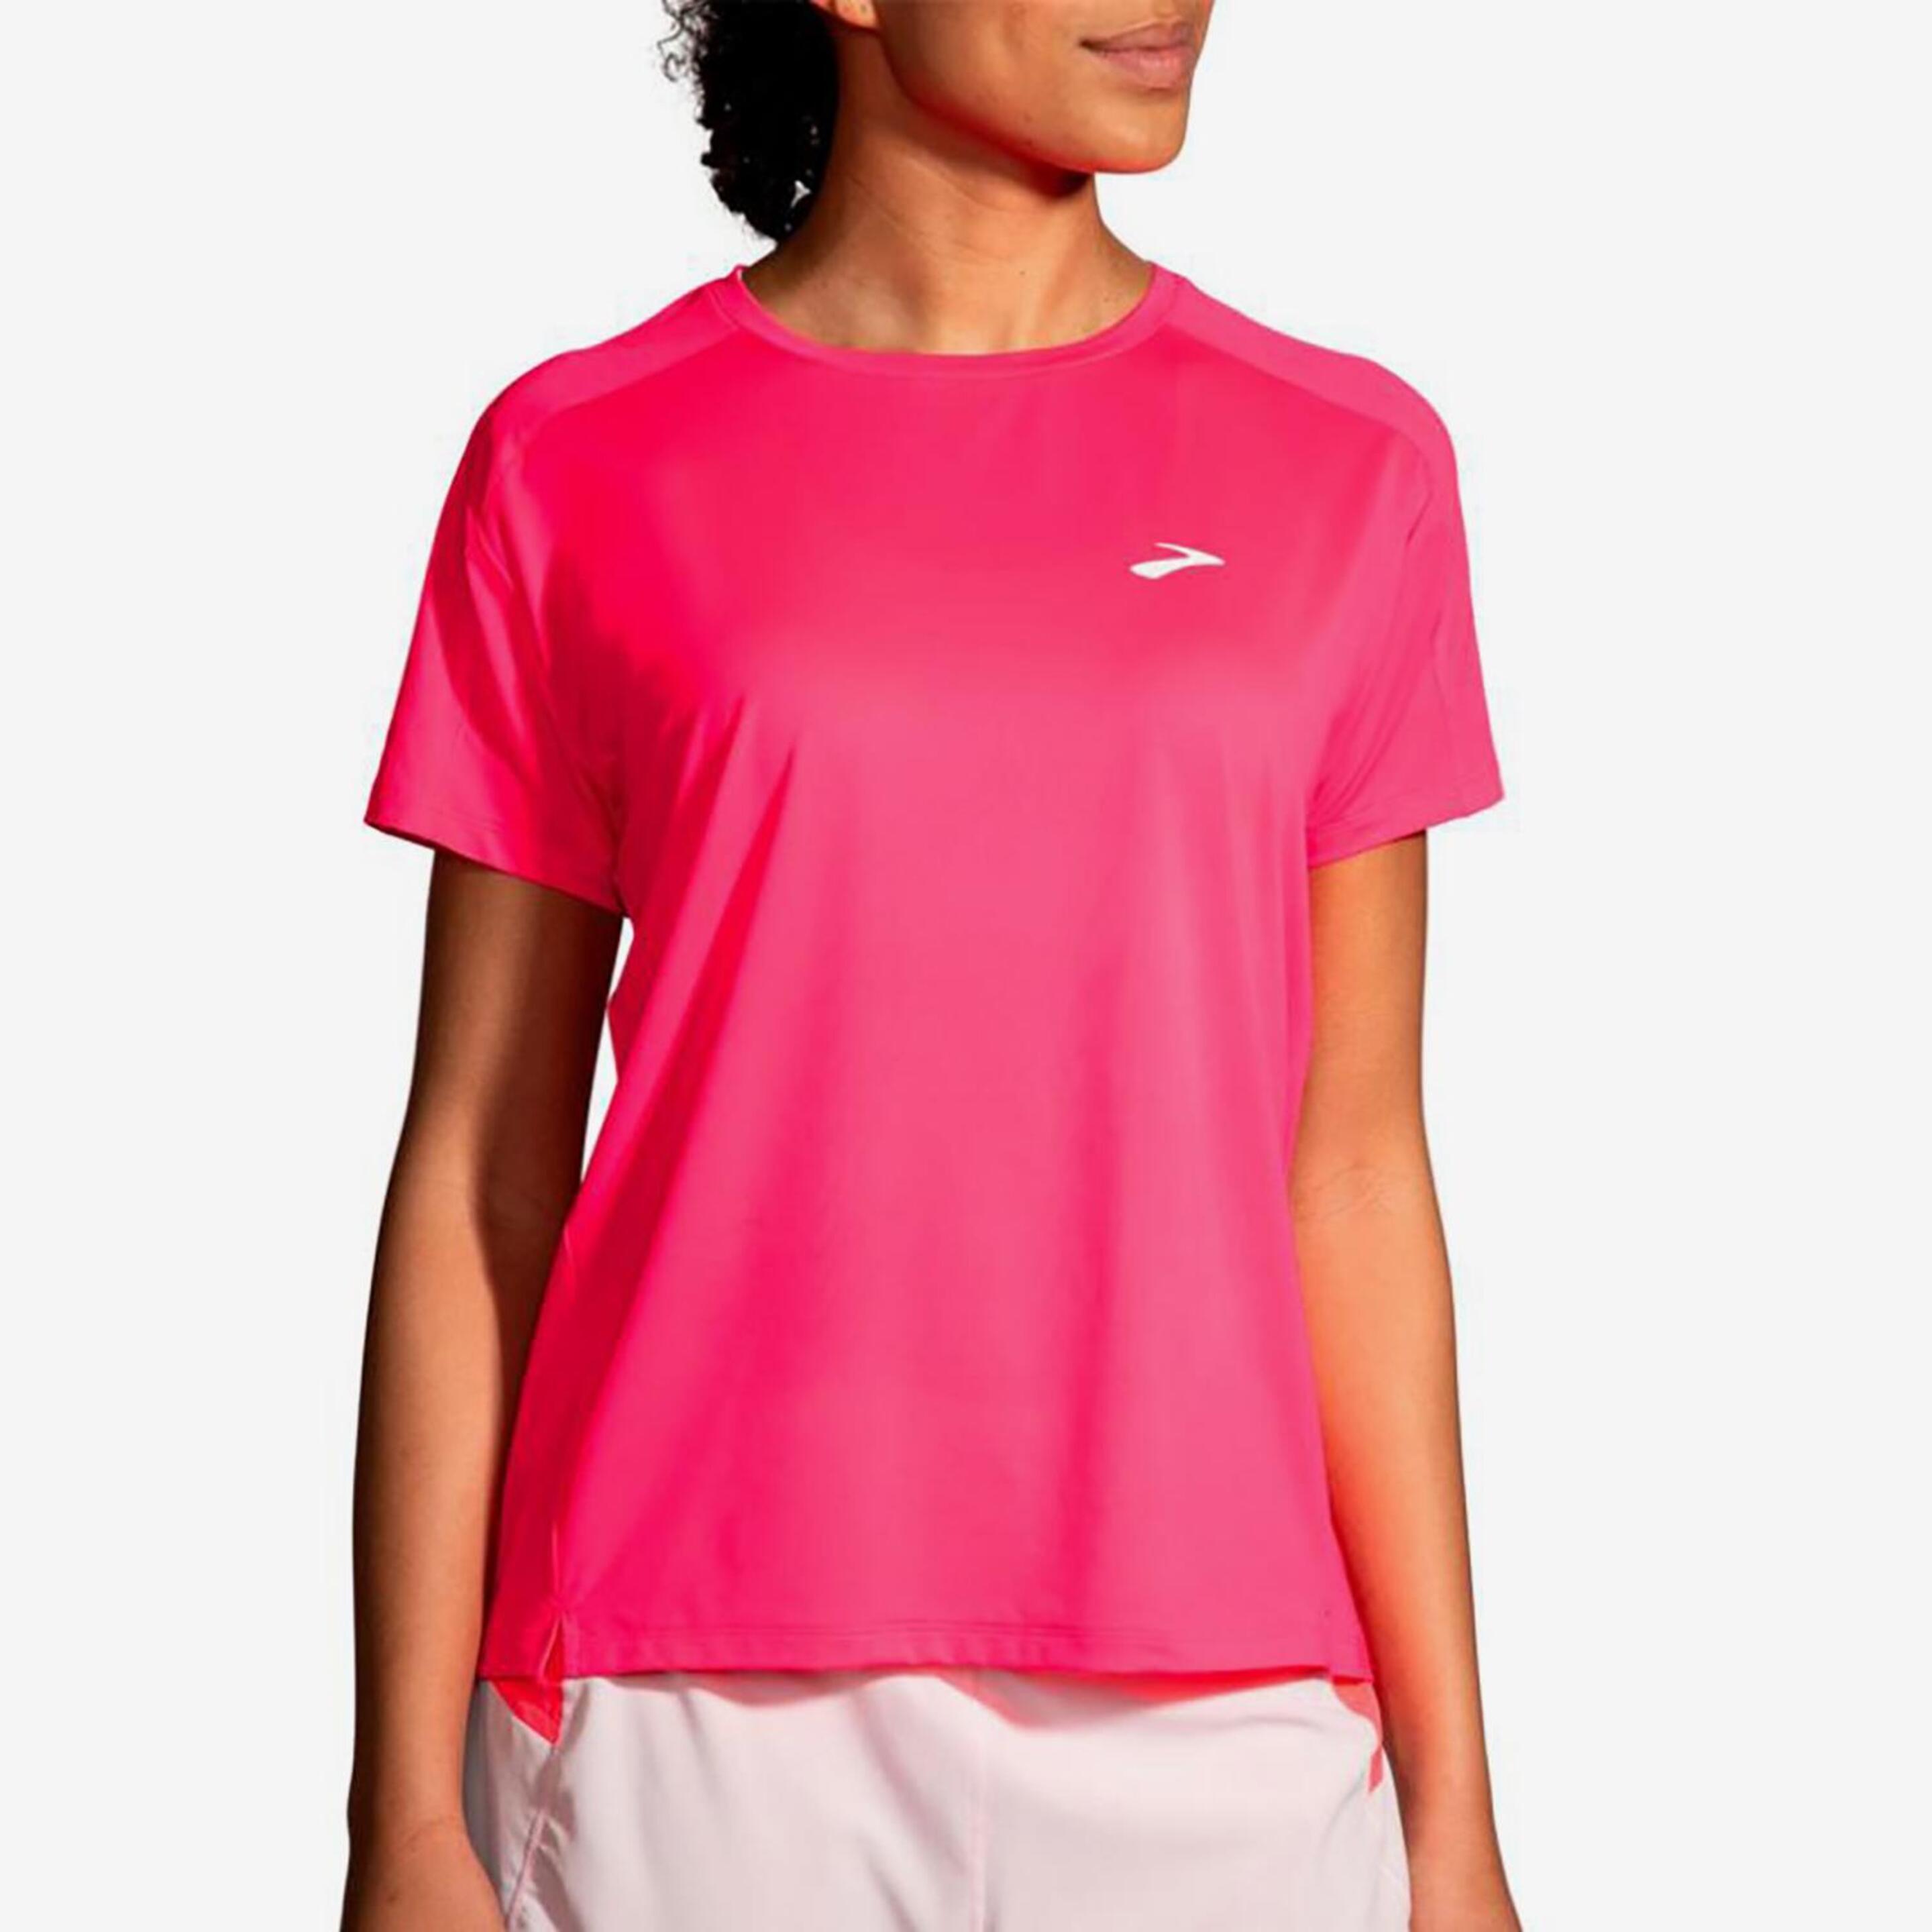 Brooks Sprint Free 2.0 - rosa - Camiseta Running Mujer